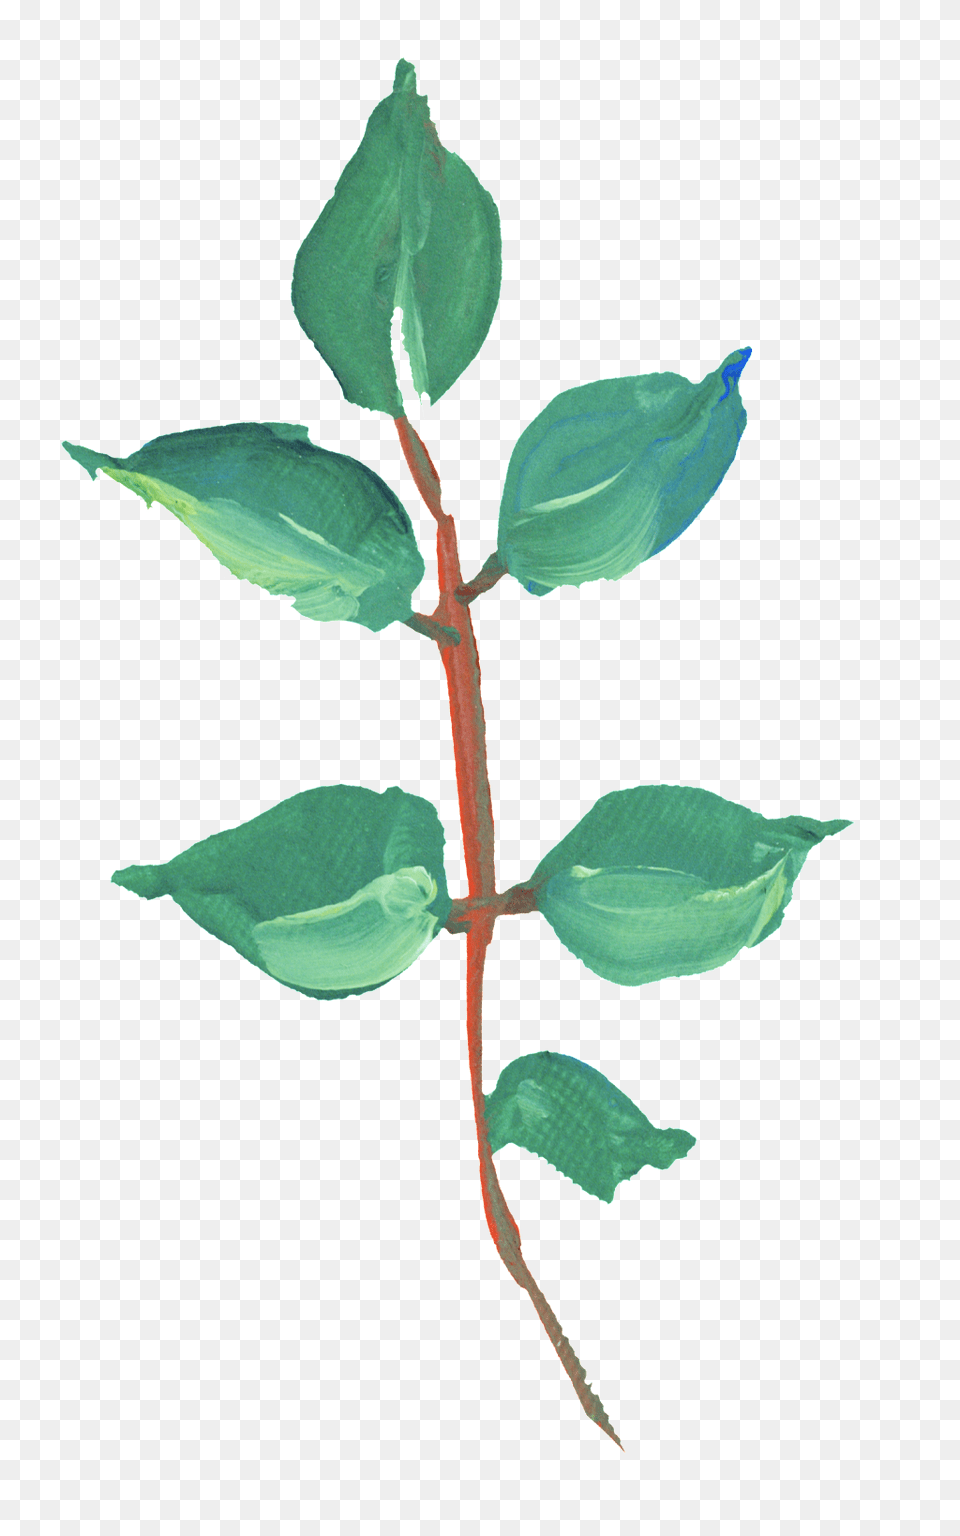 Pintado A Mano Aceite De Verdes Hojas Transparente Descargar, Leaf, Plant, Herbal, Herbs Png